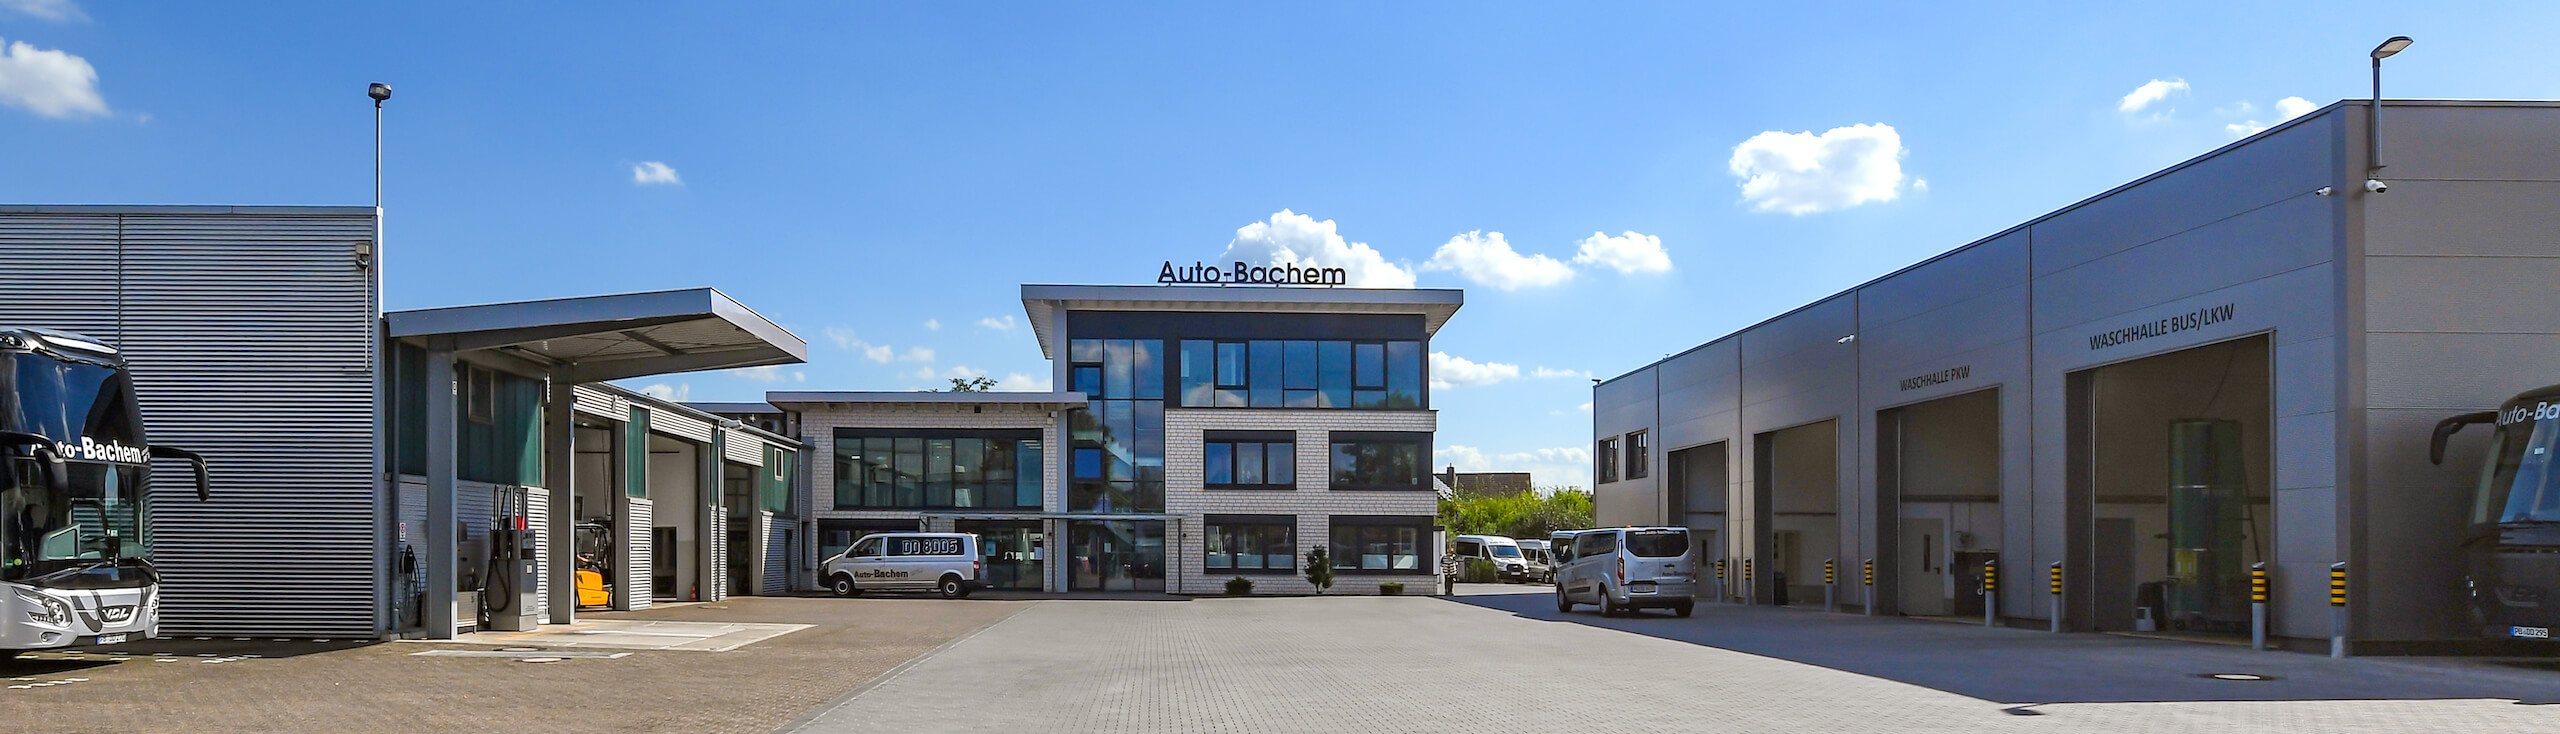 Auto Bachem GmbH – Autovermietung, Bustouristik, Personenbeförderung &  XXL-Waschanlage